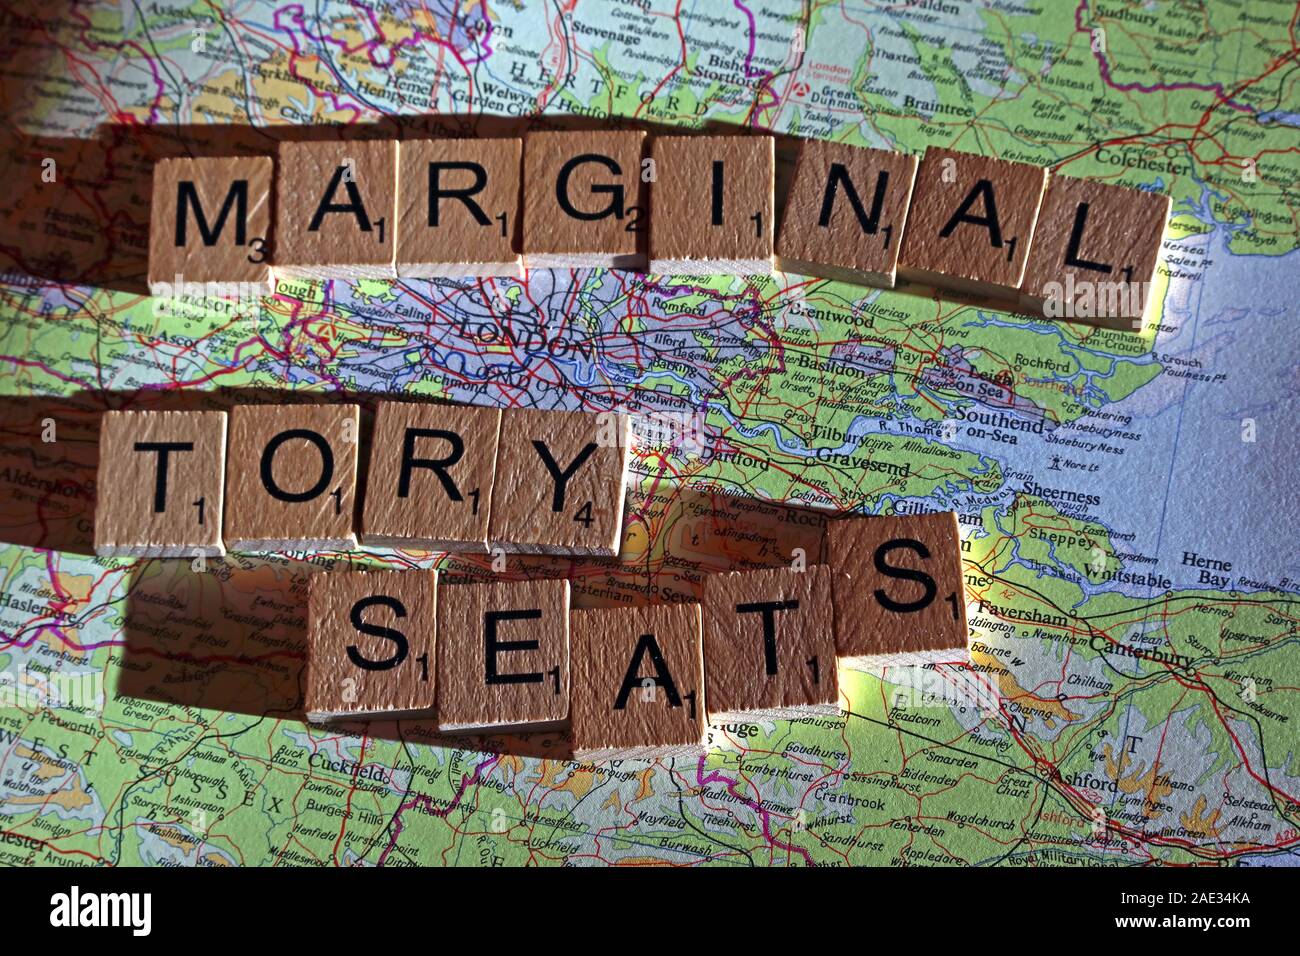 Il Tory marginale sedi farro Scrabble in lettere su una mappa del Regno Unito - Elezioni generali, alle elezioni politiche di partito leader,,parti,rivendicazioni,dubbi Foto Stock